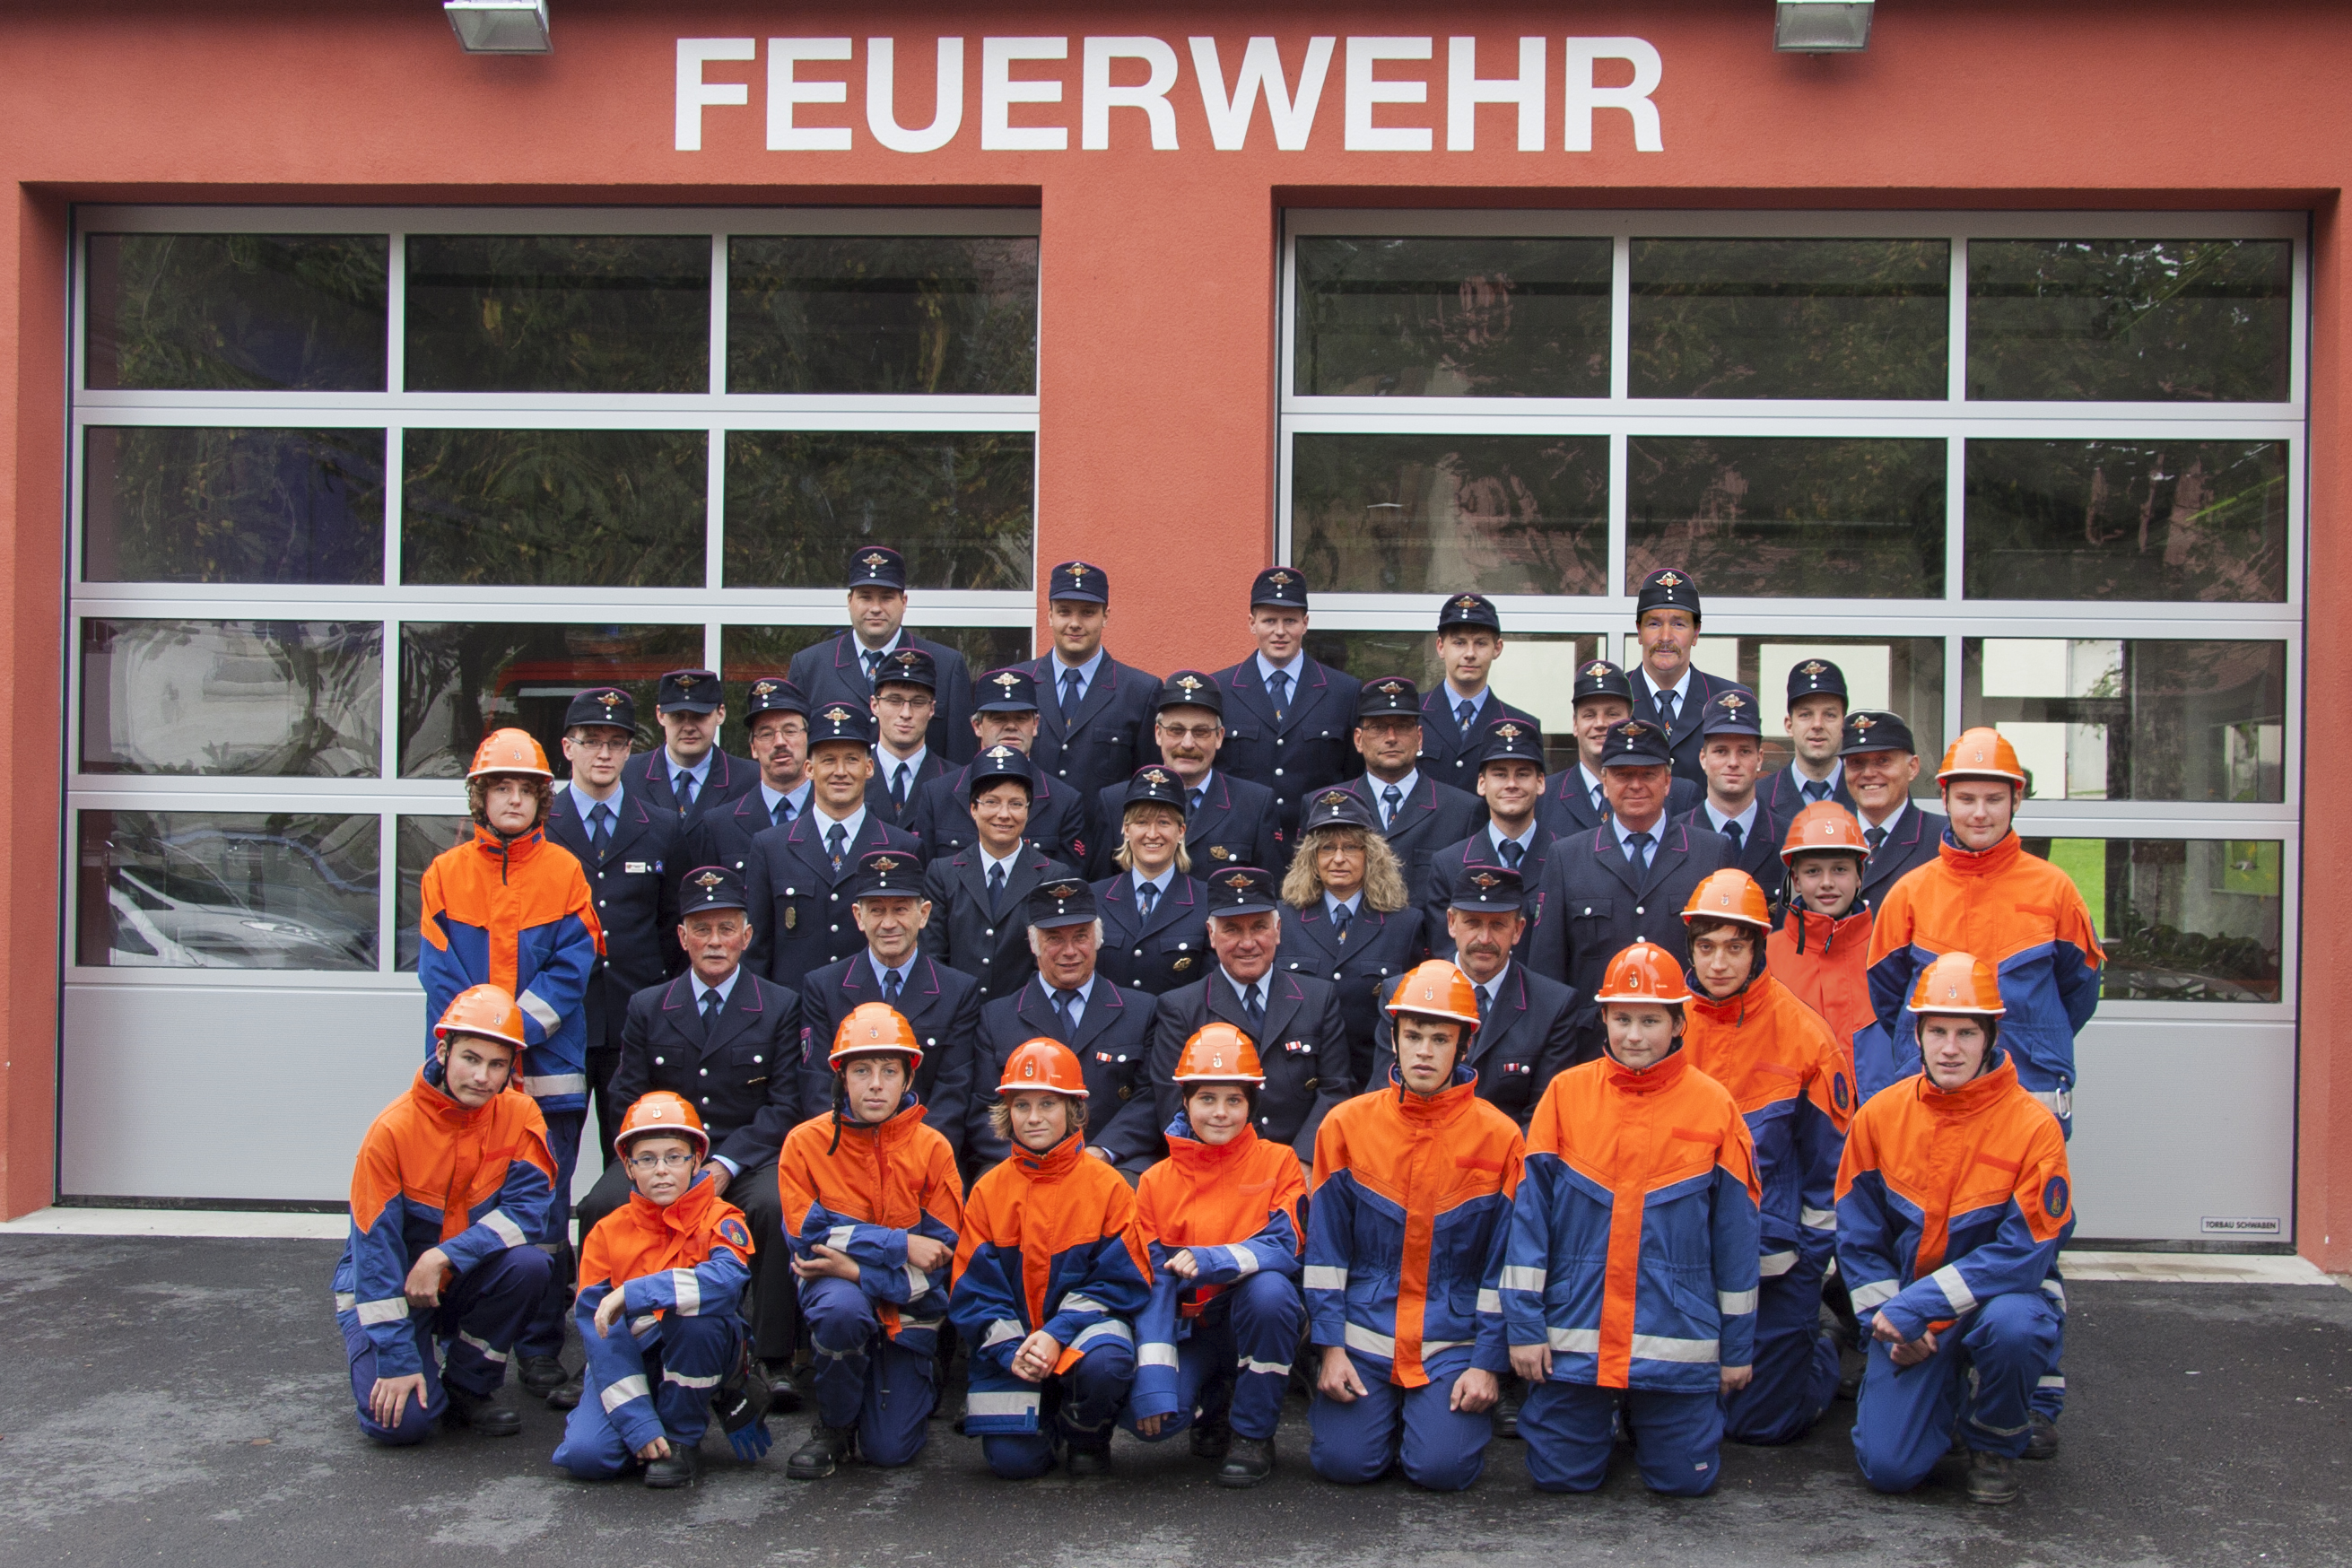  Foto: Feuerwehr Ochsenhausen, Abt. Mittelbuch 